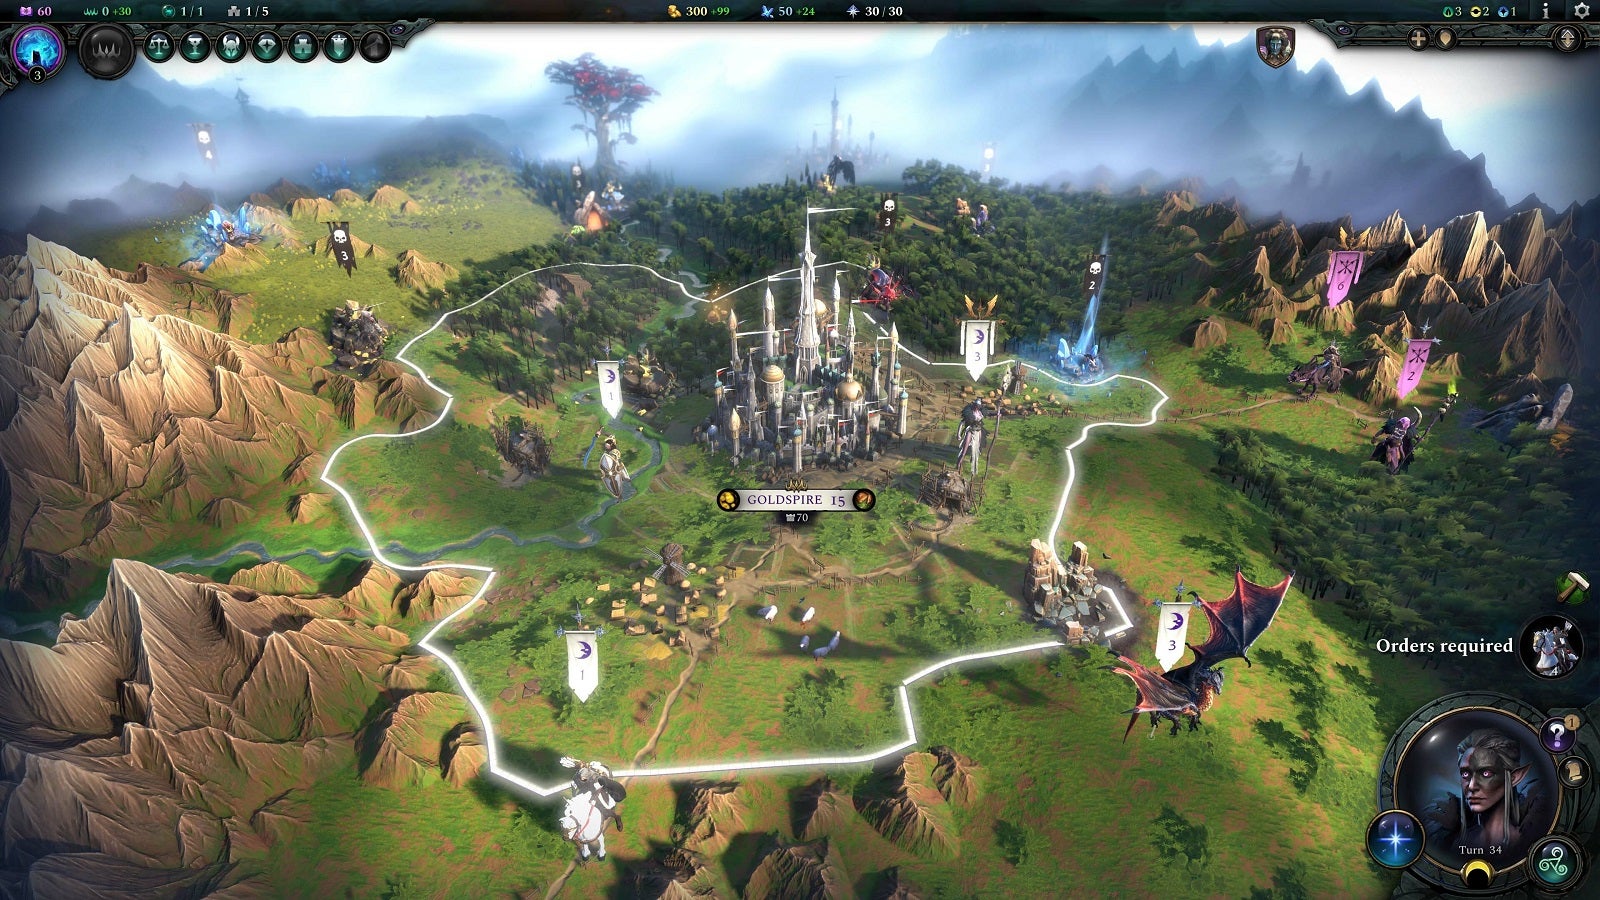 Obrazki dla Age of Wonders 4 wróci do świata fantasy. Zapowiedziano nową odsłonę